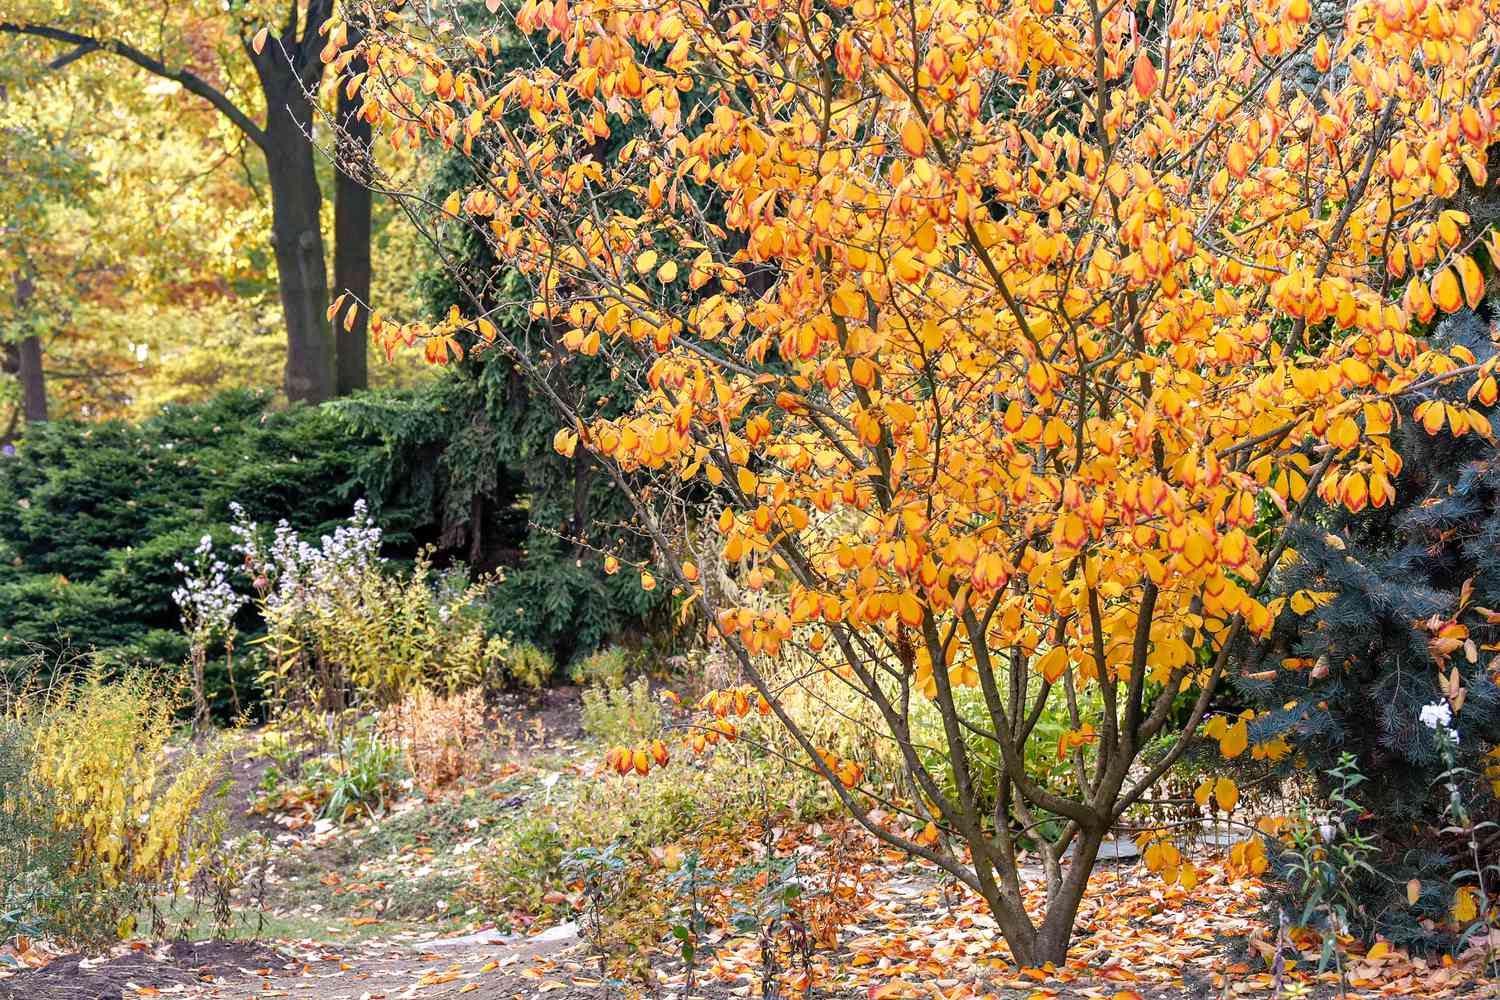 Hamamelisstrauch mit orangefarbenen Blättern mitten im Wald